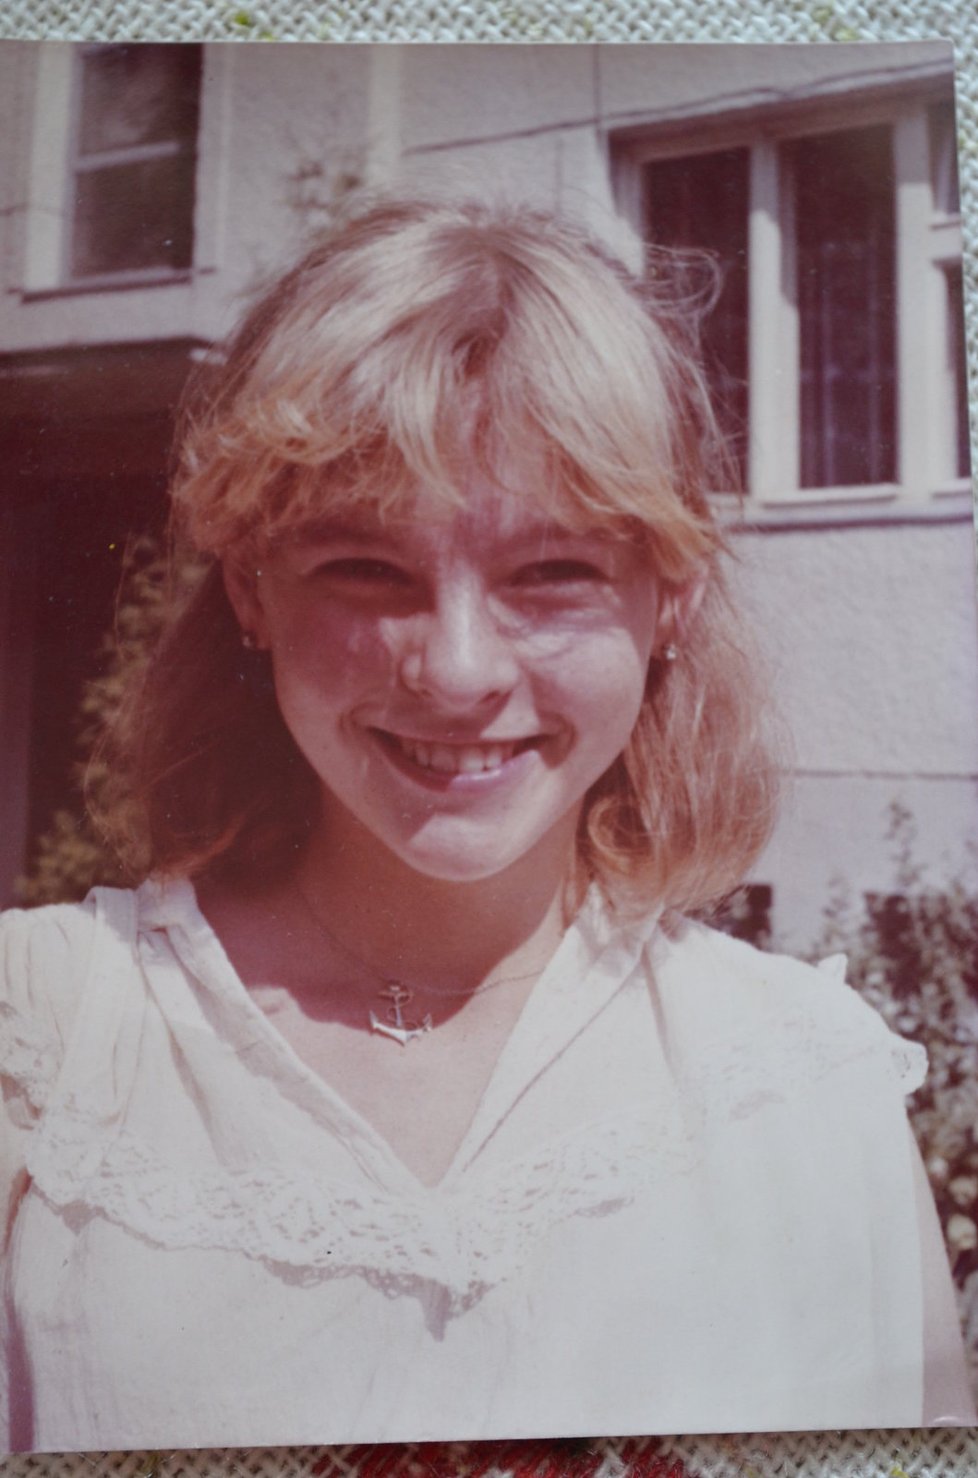 1982: Zpěvačce bylo krásných 16 let a měla své sny, jejím největším bylo stát se slavnou zpěvačkou.